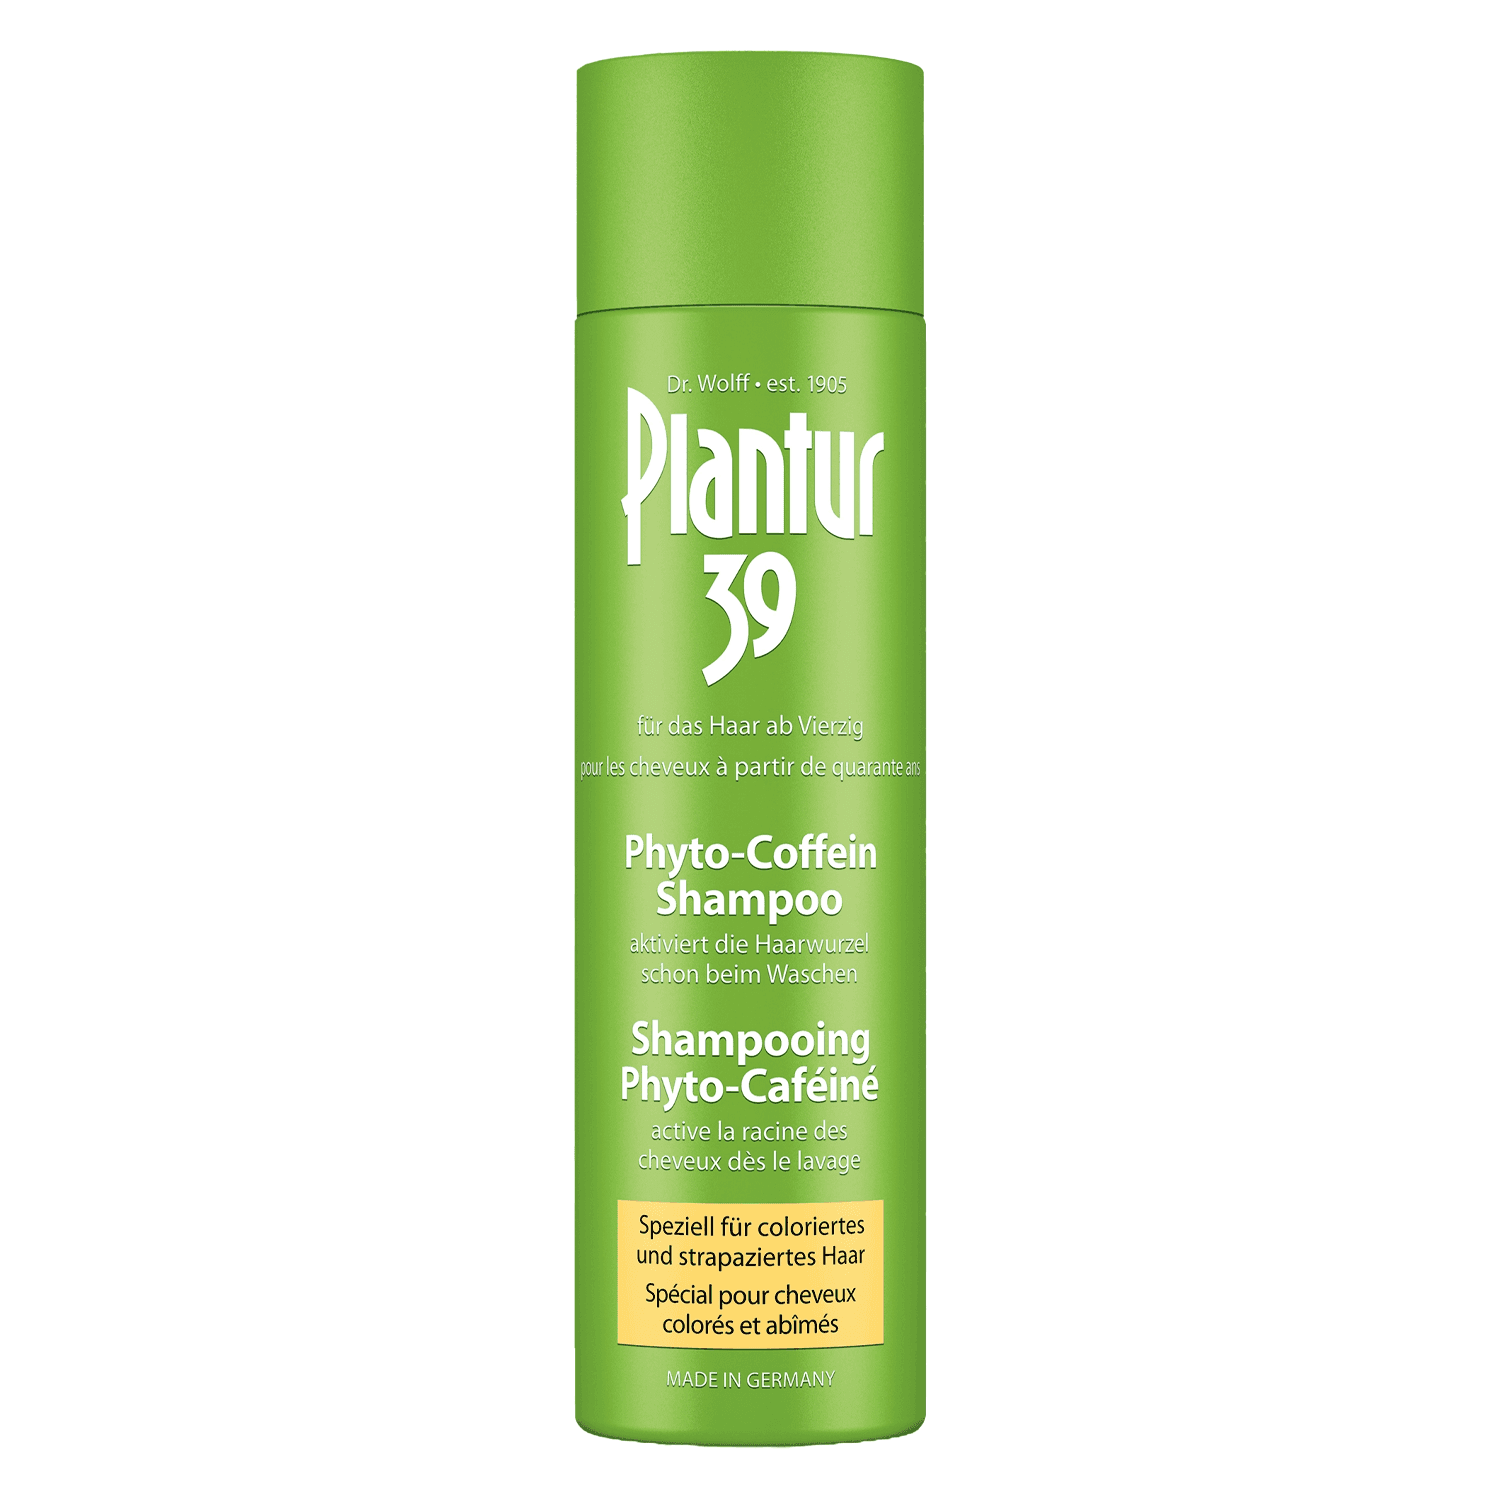 Plantur 39 - Coffein-Shampoo speziell für coloriertes und strapaziertes Haar